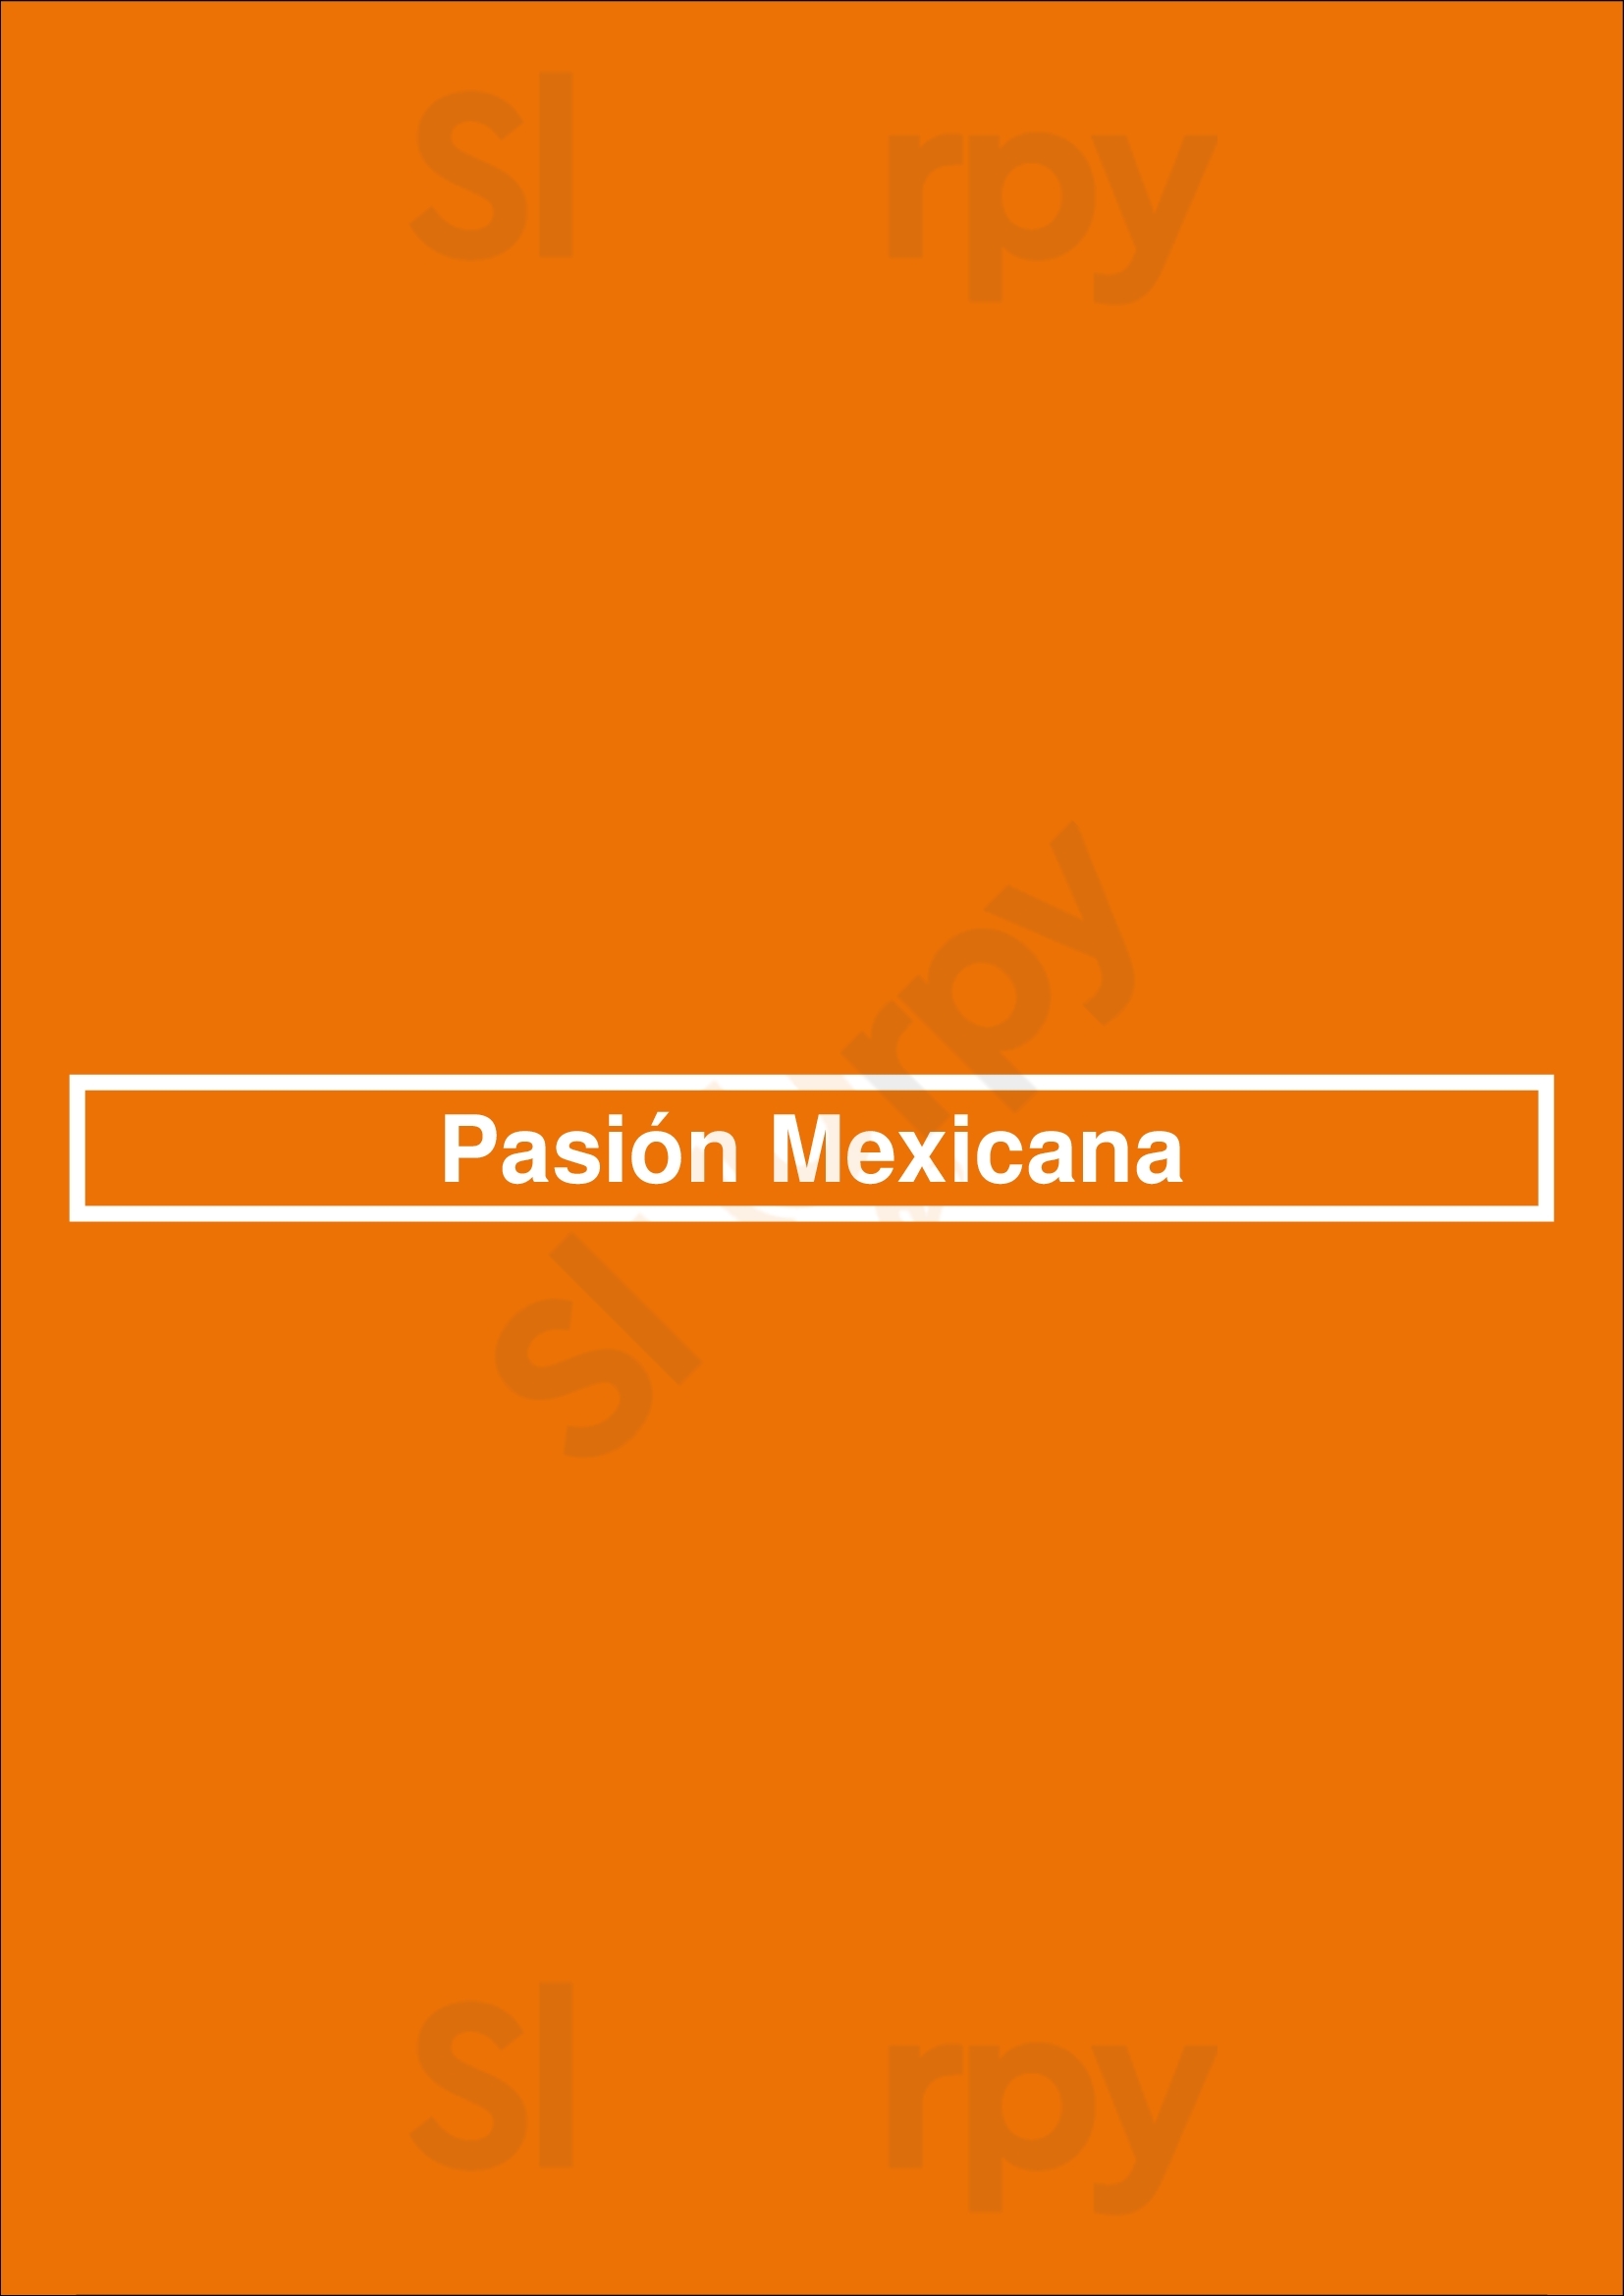 Pasión Mexicana Parede Menu - 1